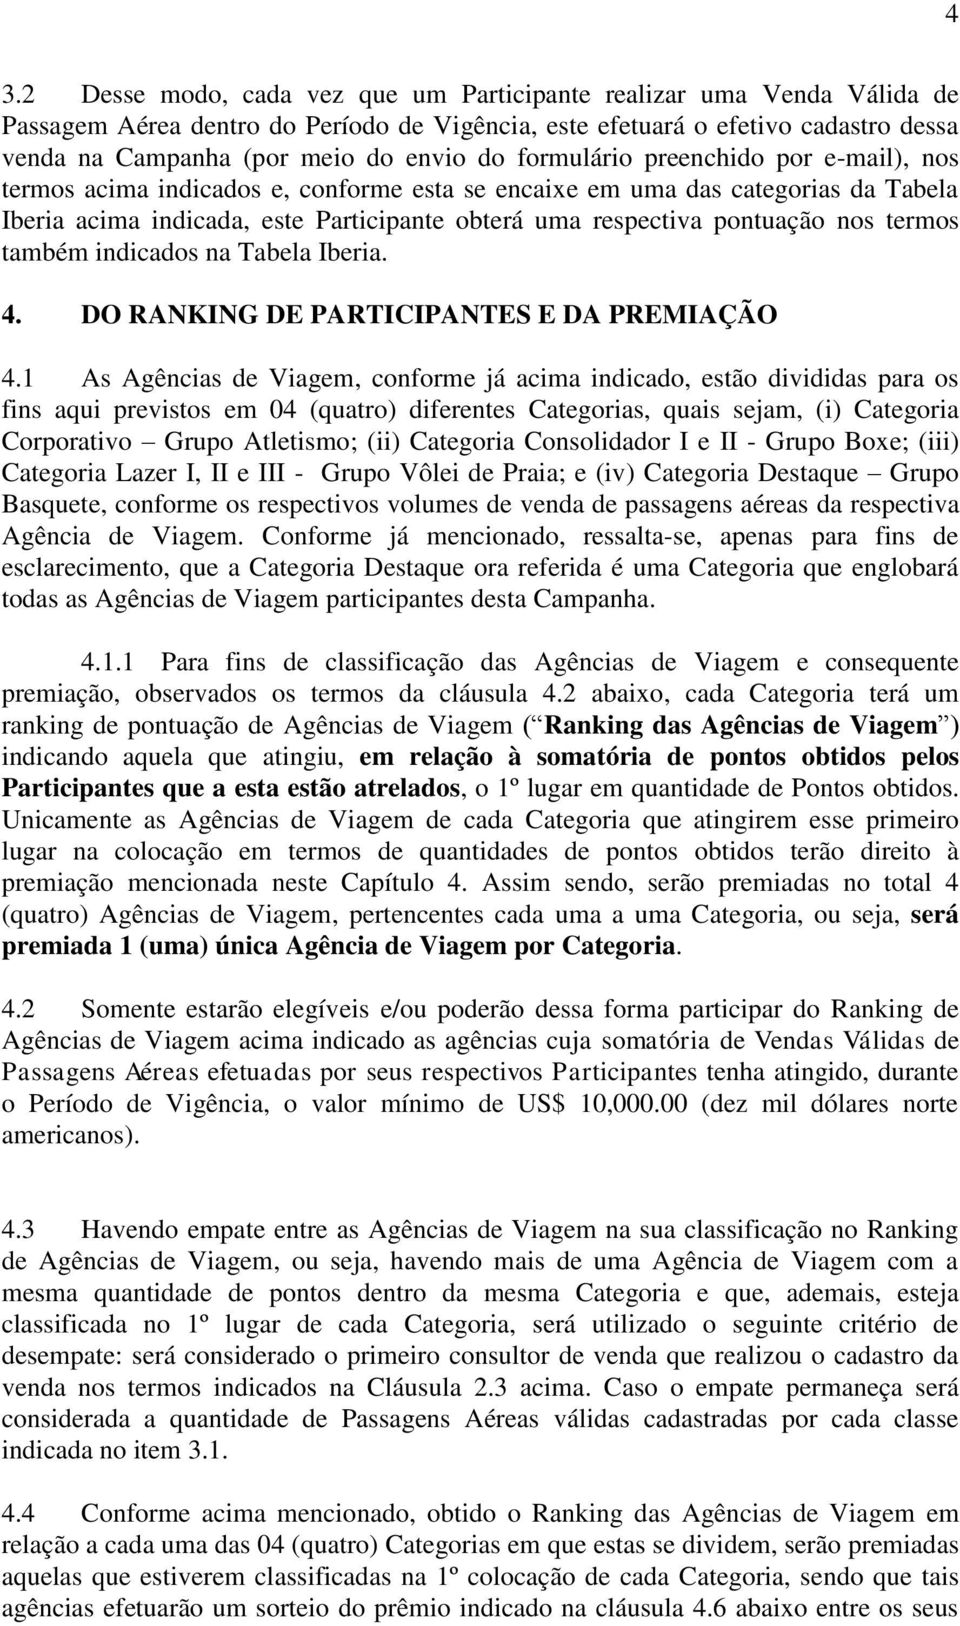 nos termos também indicados na Tabela Iberia. 4. DO RANKING DE PARTICIPANTES E DA PREMIAÇÃO 4.